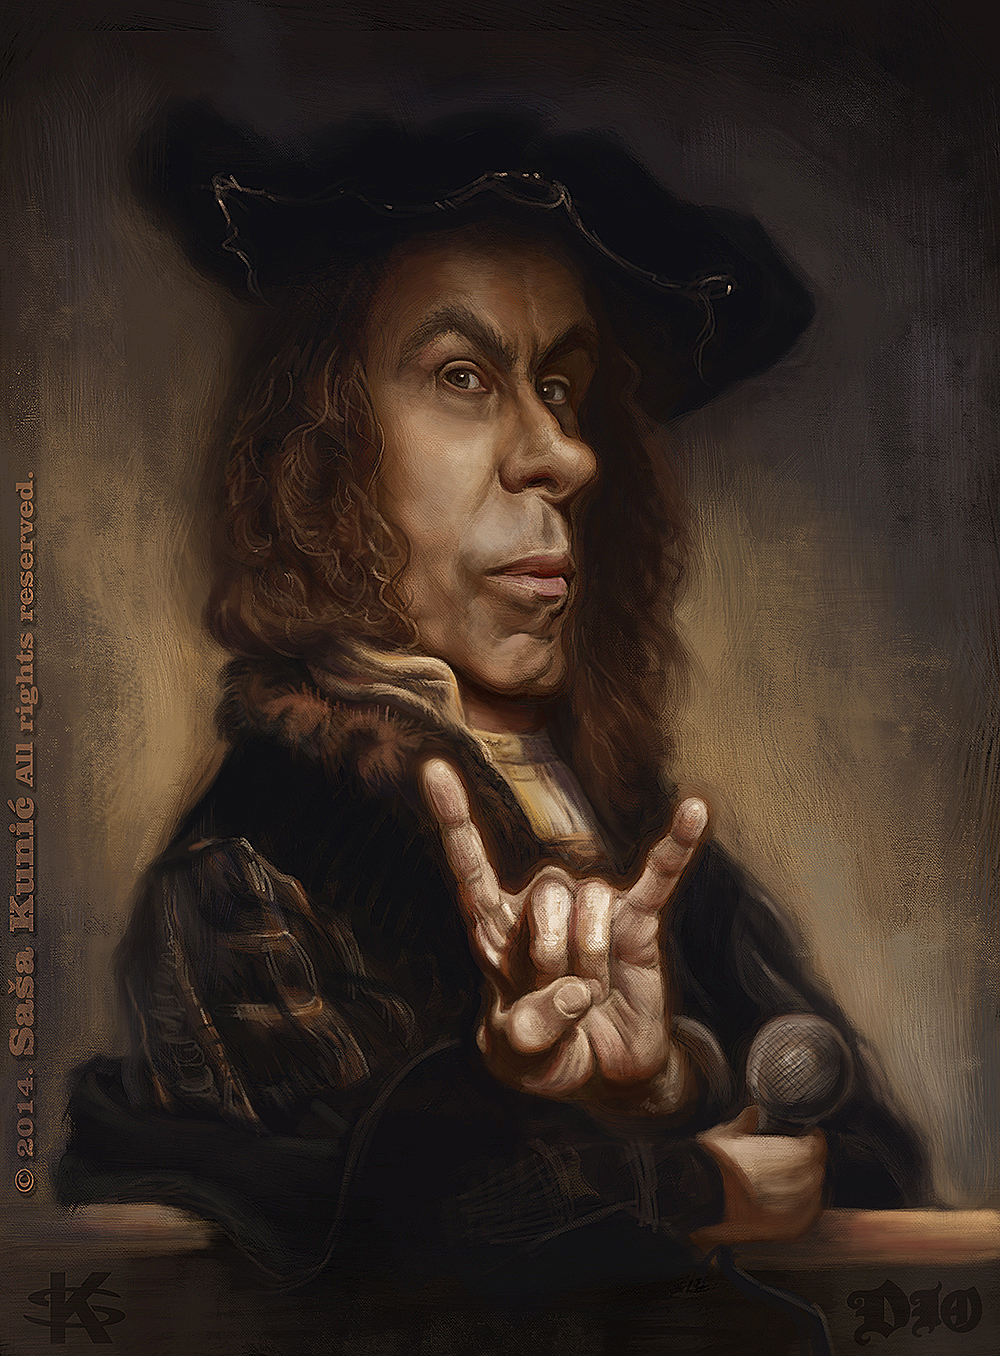 Ronnie James Dio van Rijn